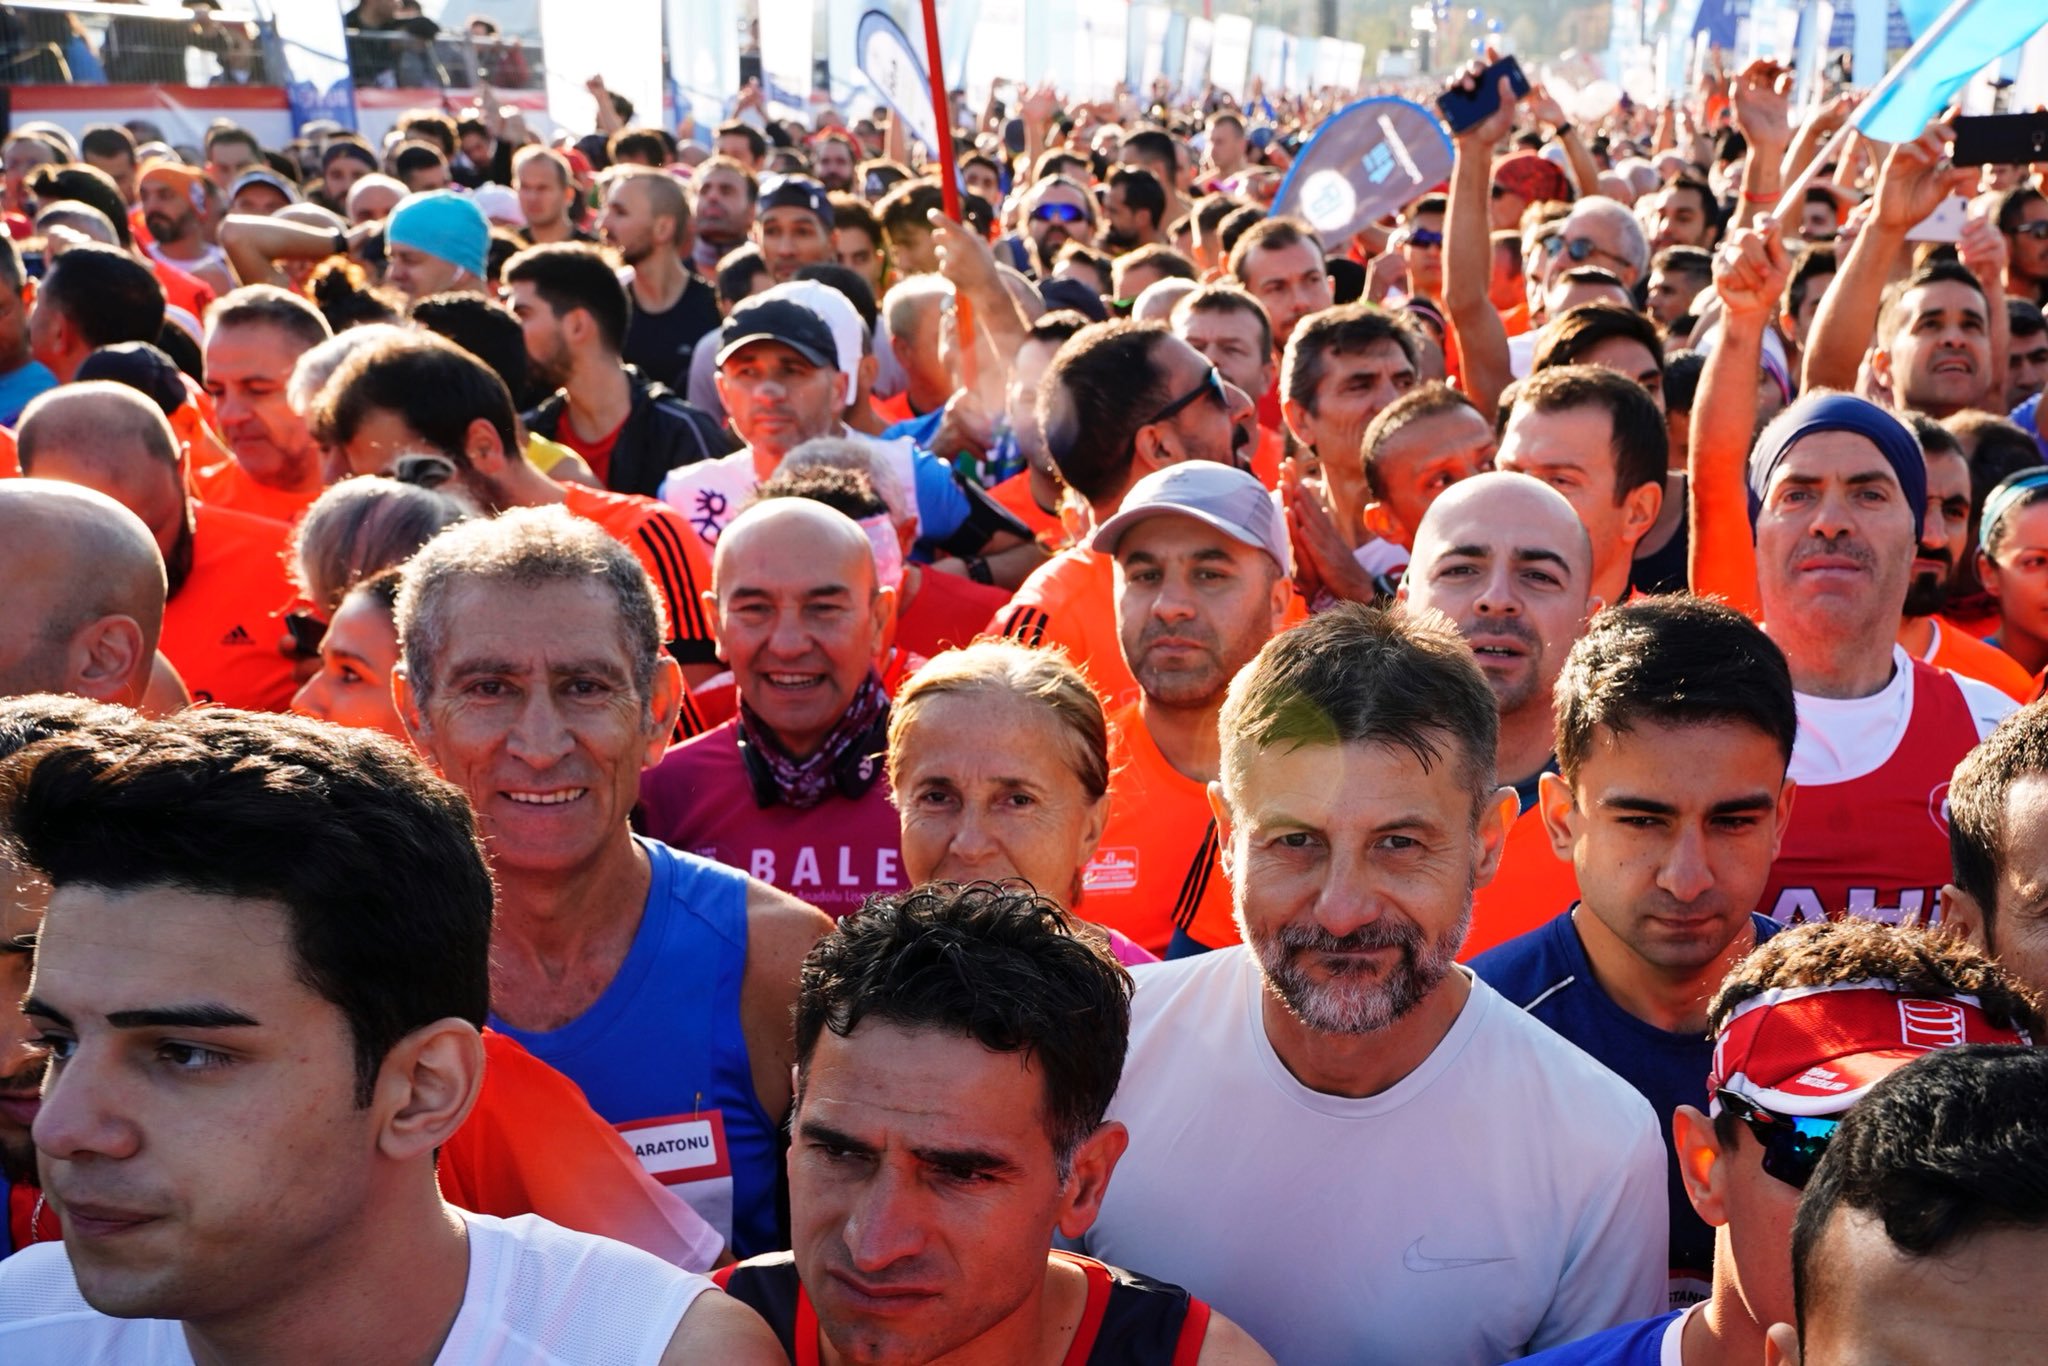 Başkan Soyer'in İstanbul Maratonu heyecanı!